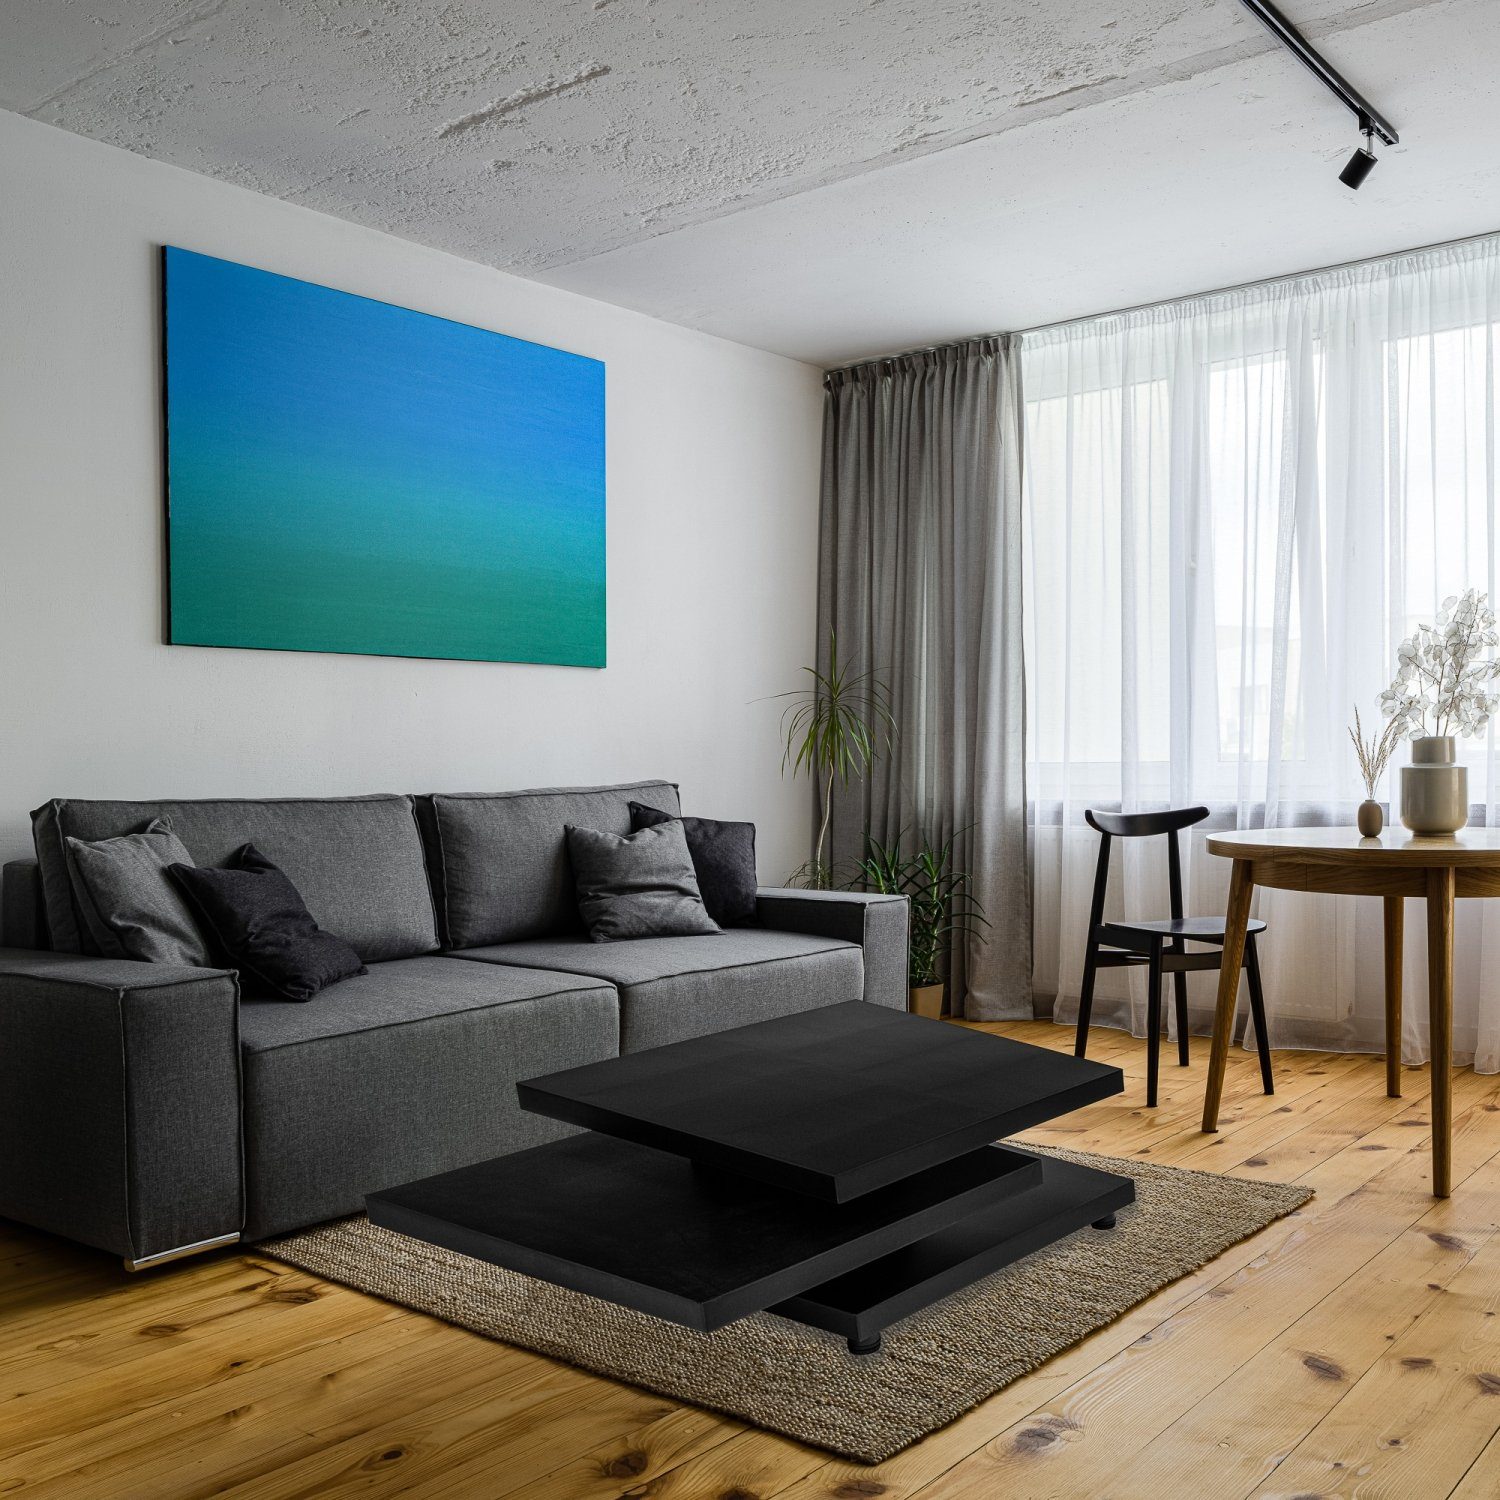 Cube-Design, Sofatisch, Tischplatten, STILISTA Couchtisch Wohnzimmertisch Beistelltisch Schwarz und Matt Farb- Größenwahl schwenkbare 360°